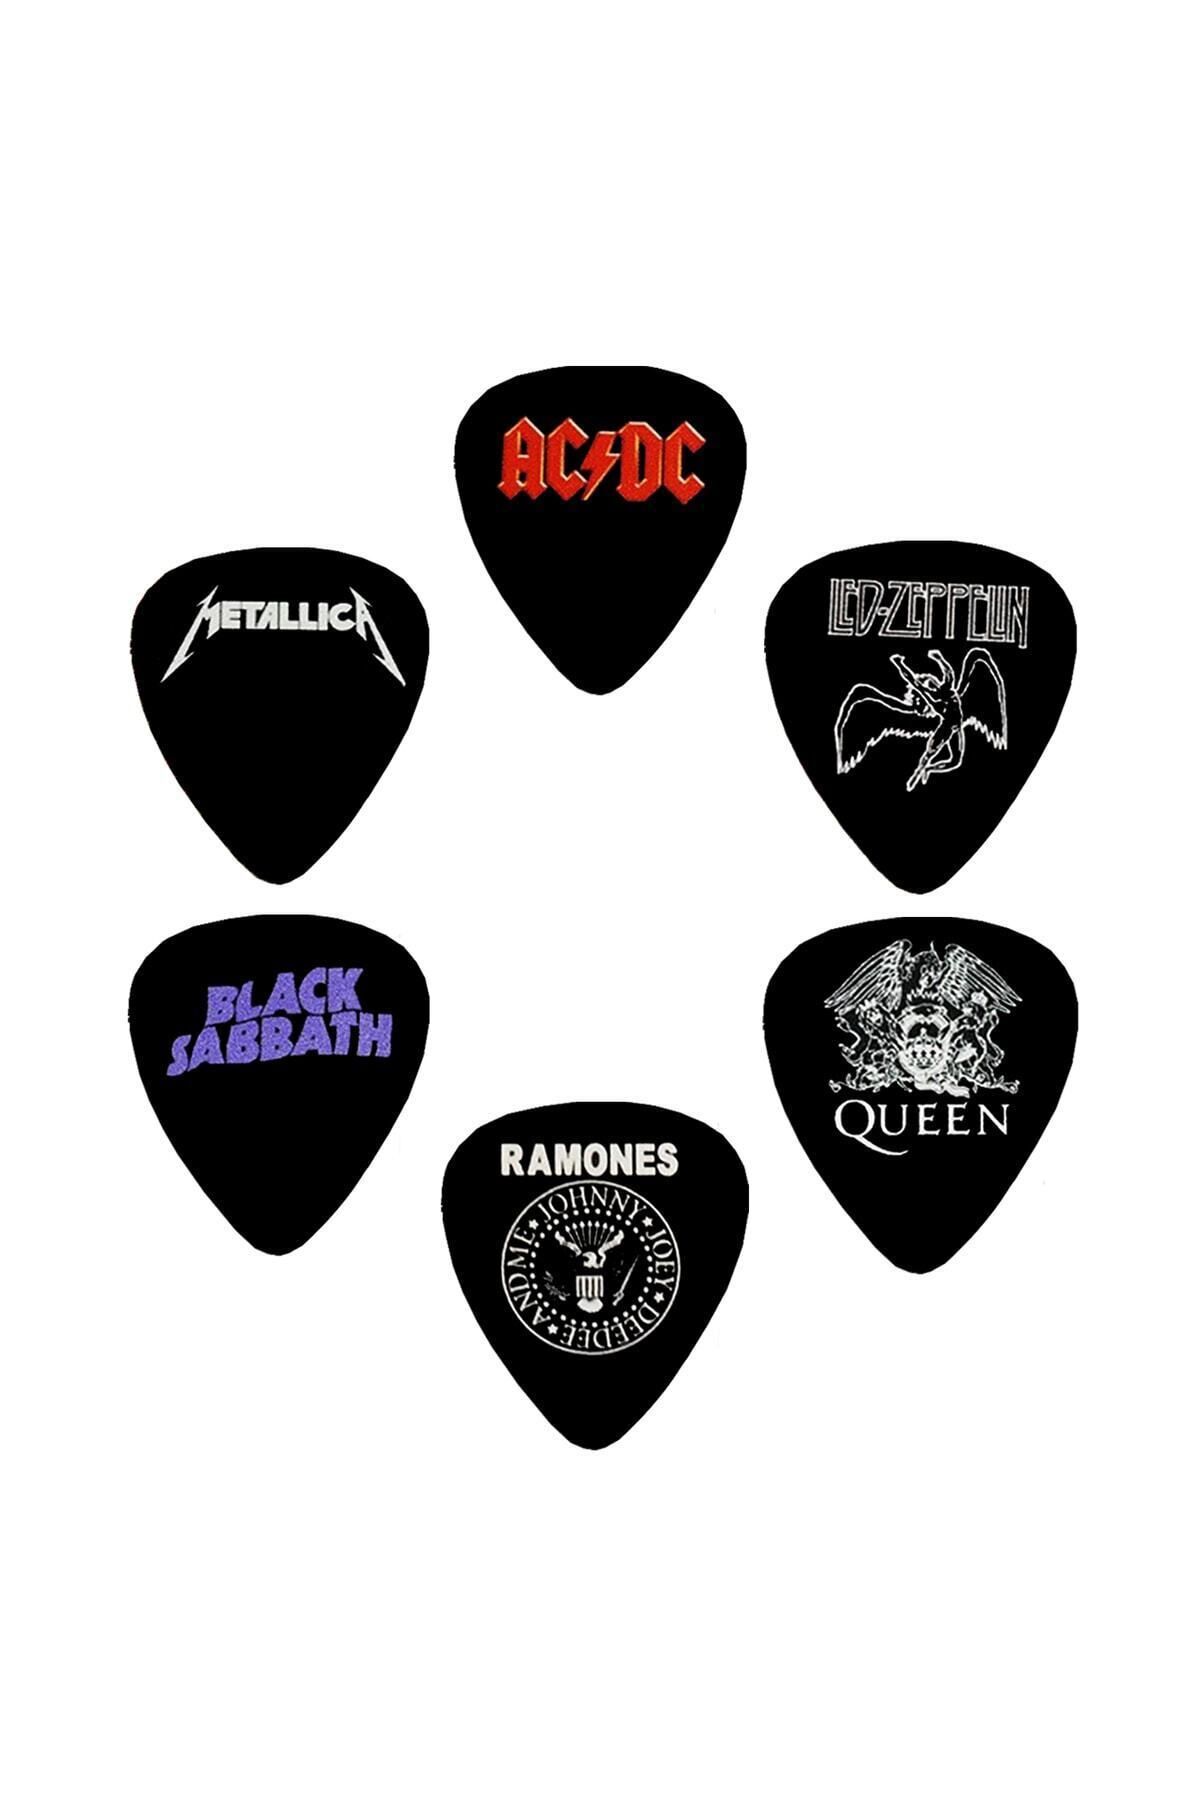 cantekin Gitar Pena 6 Adet Metallica Adcd Led Zeppelin Queen Black Sabbath Ramones